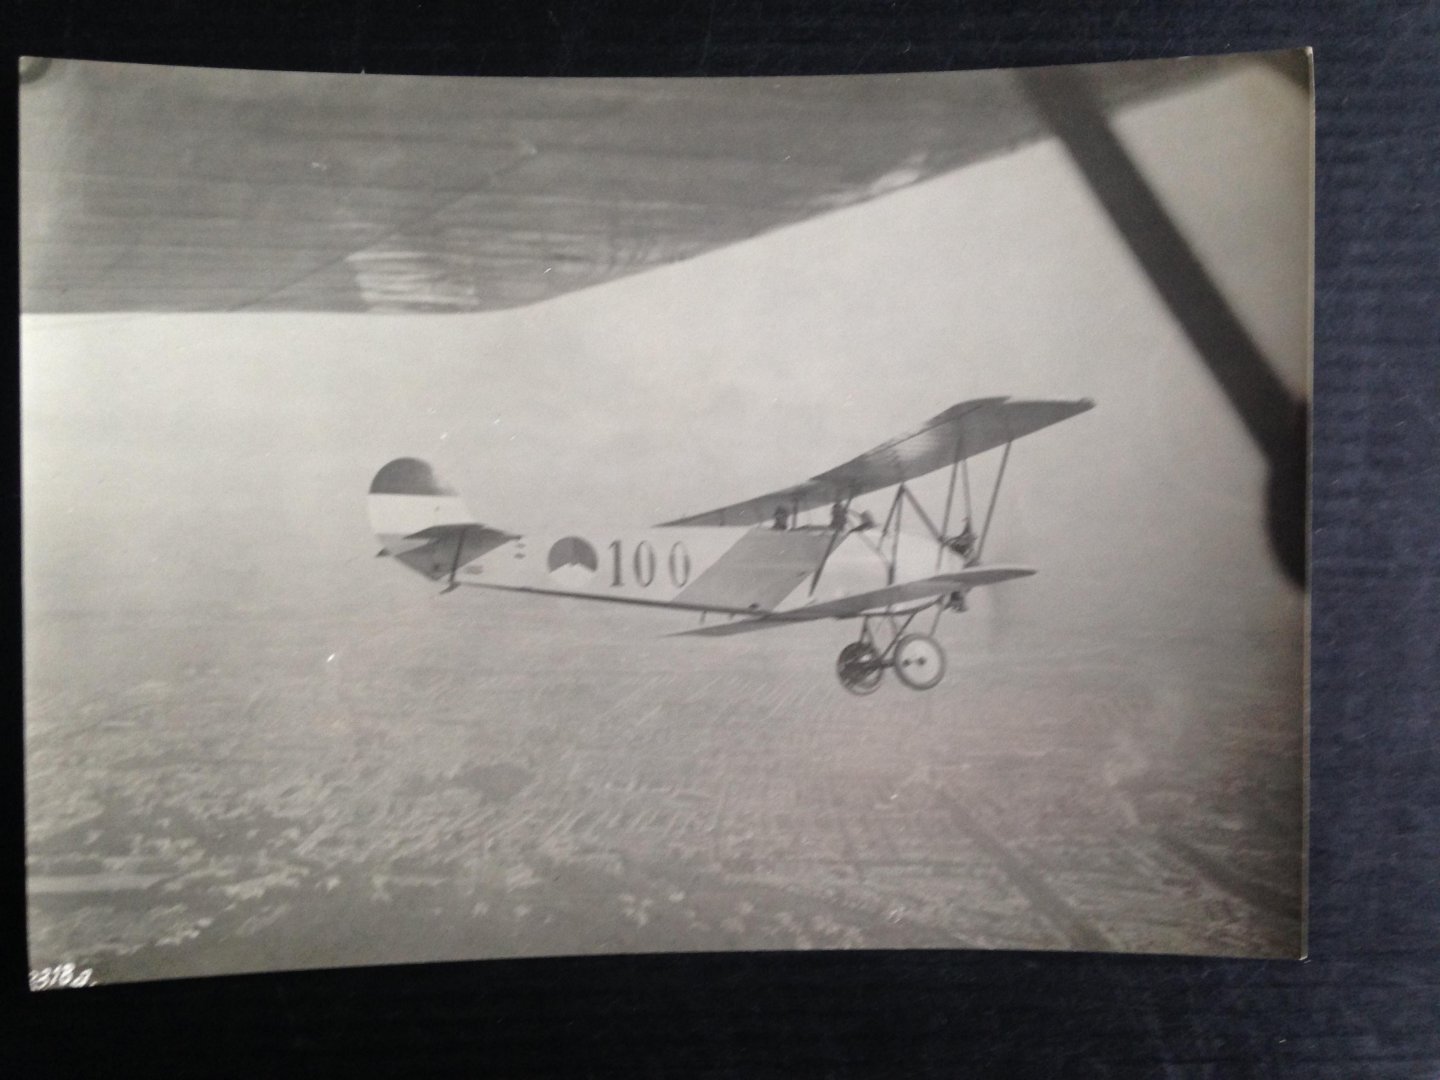  - Authentieke vooroorlogse foto Fokker S.IV Mongoose